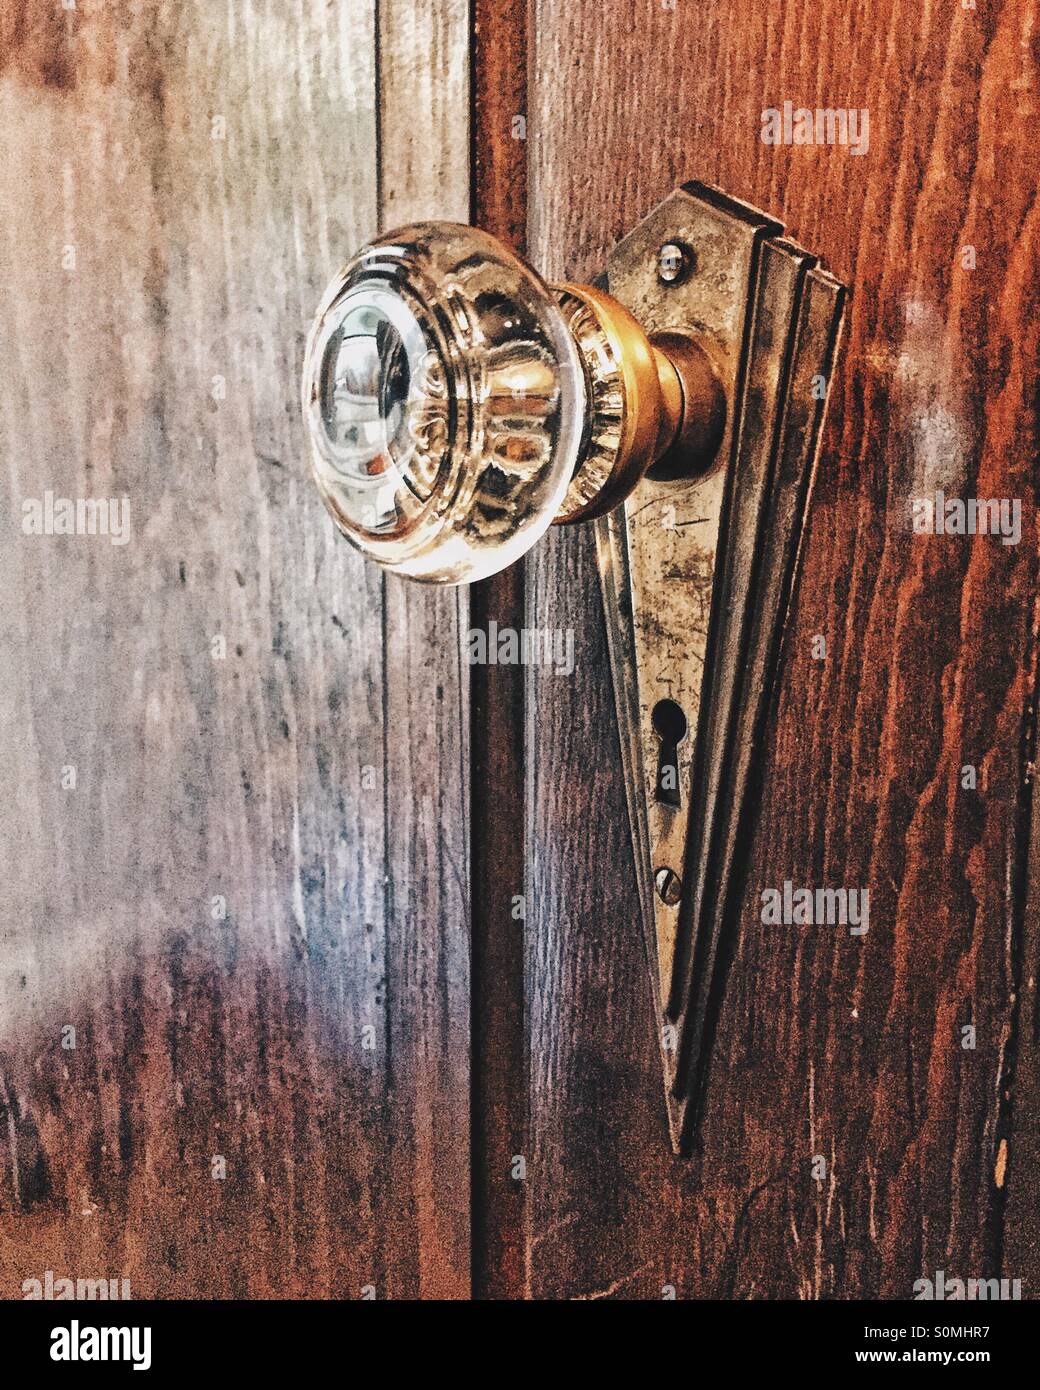 Old door knob Stock Photo